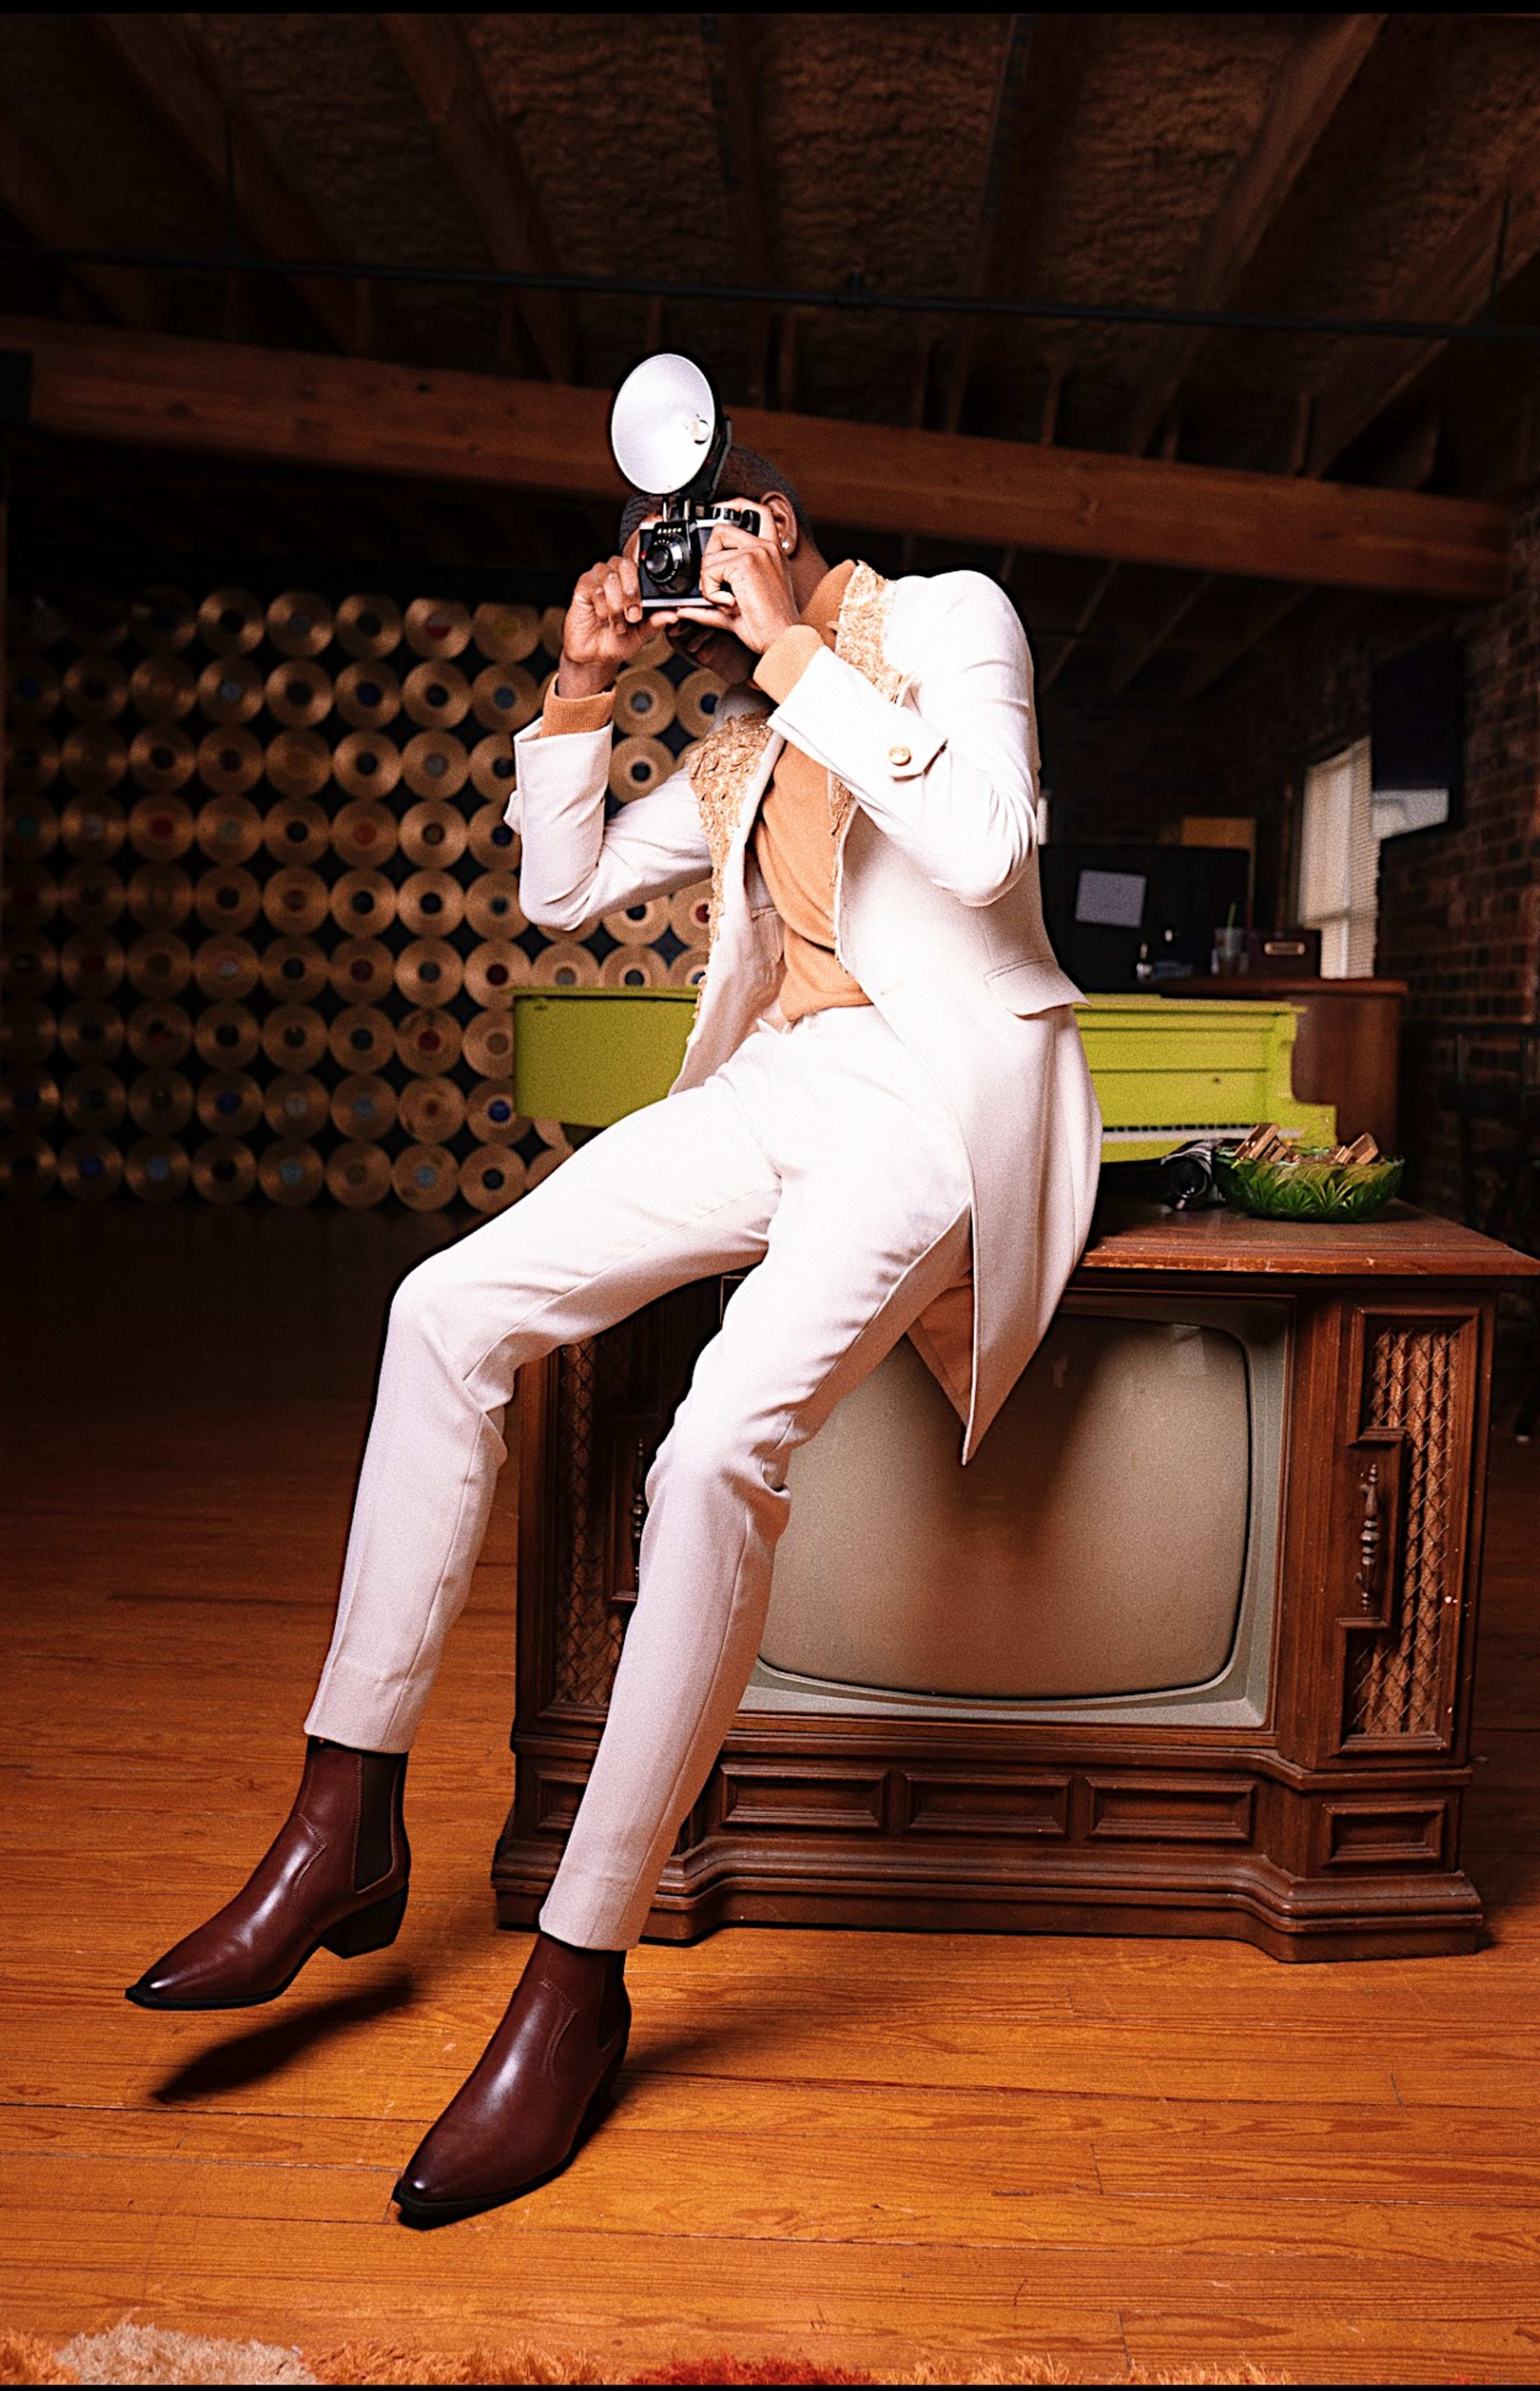 Ein Mann in einem weißen Anzug, der während eines Retro-Fotoshootings auf einem braunen Fernseher posiert.